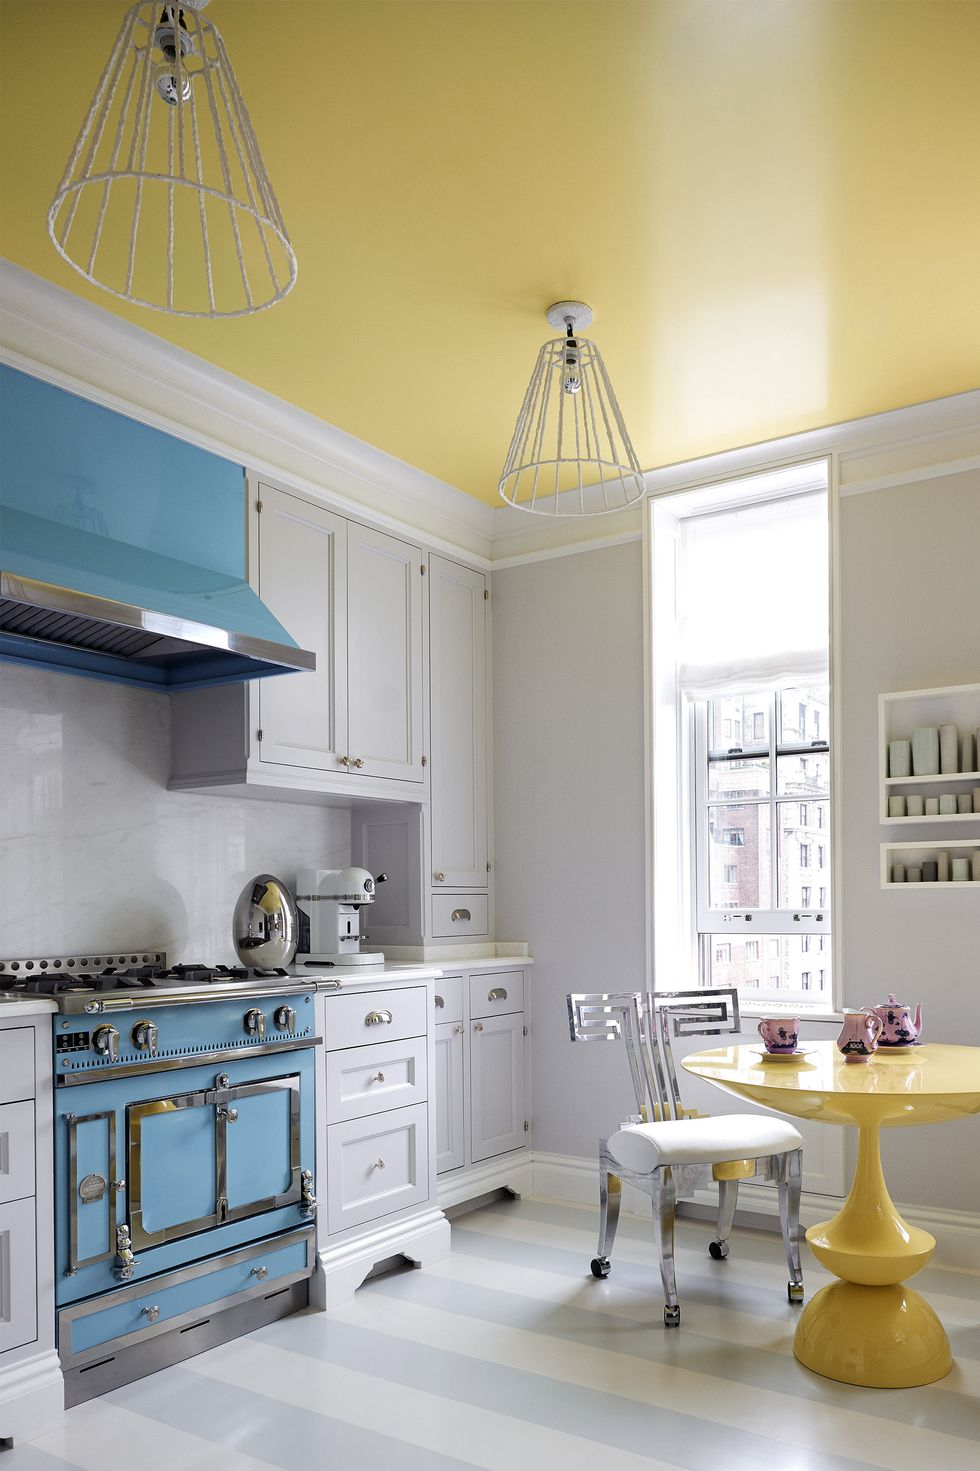 Không gian thiết kế theo phong cách vintage với tủ bếp, bàn ghế, đèn trần kiểu cổ điển. Sự tương phản giữa sắc vàng tươi của trần nhà, bàn ăn và tủ bếp xanh lam ở trung tâm, bao phủ bởi sắc trắng càng thêm phần nổi bật.